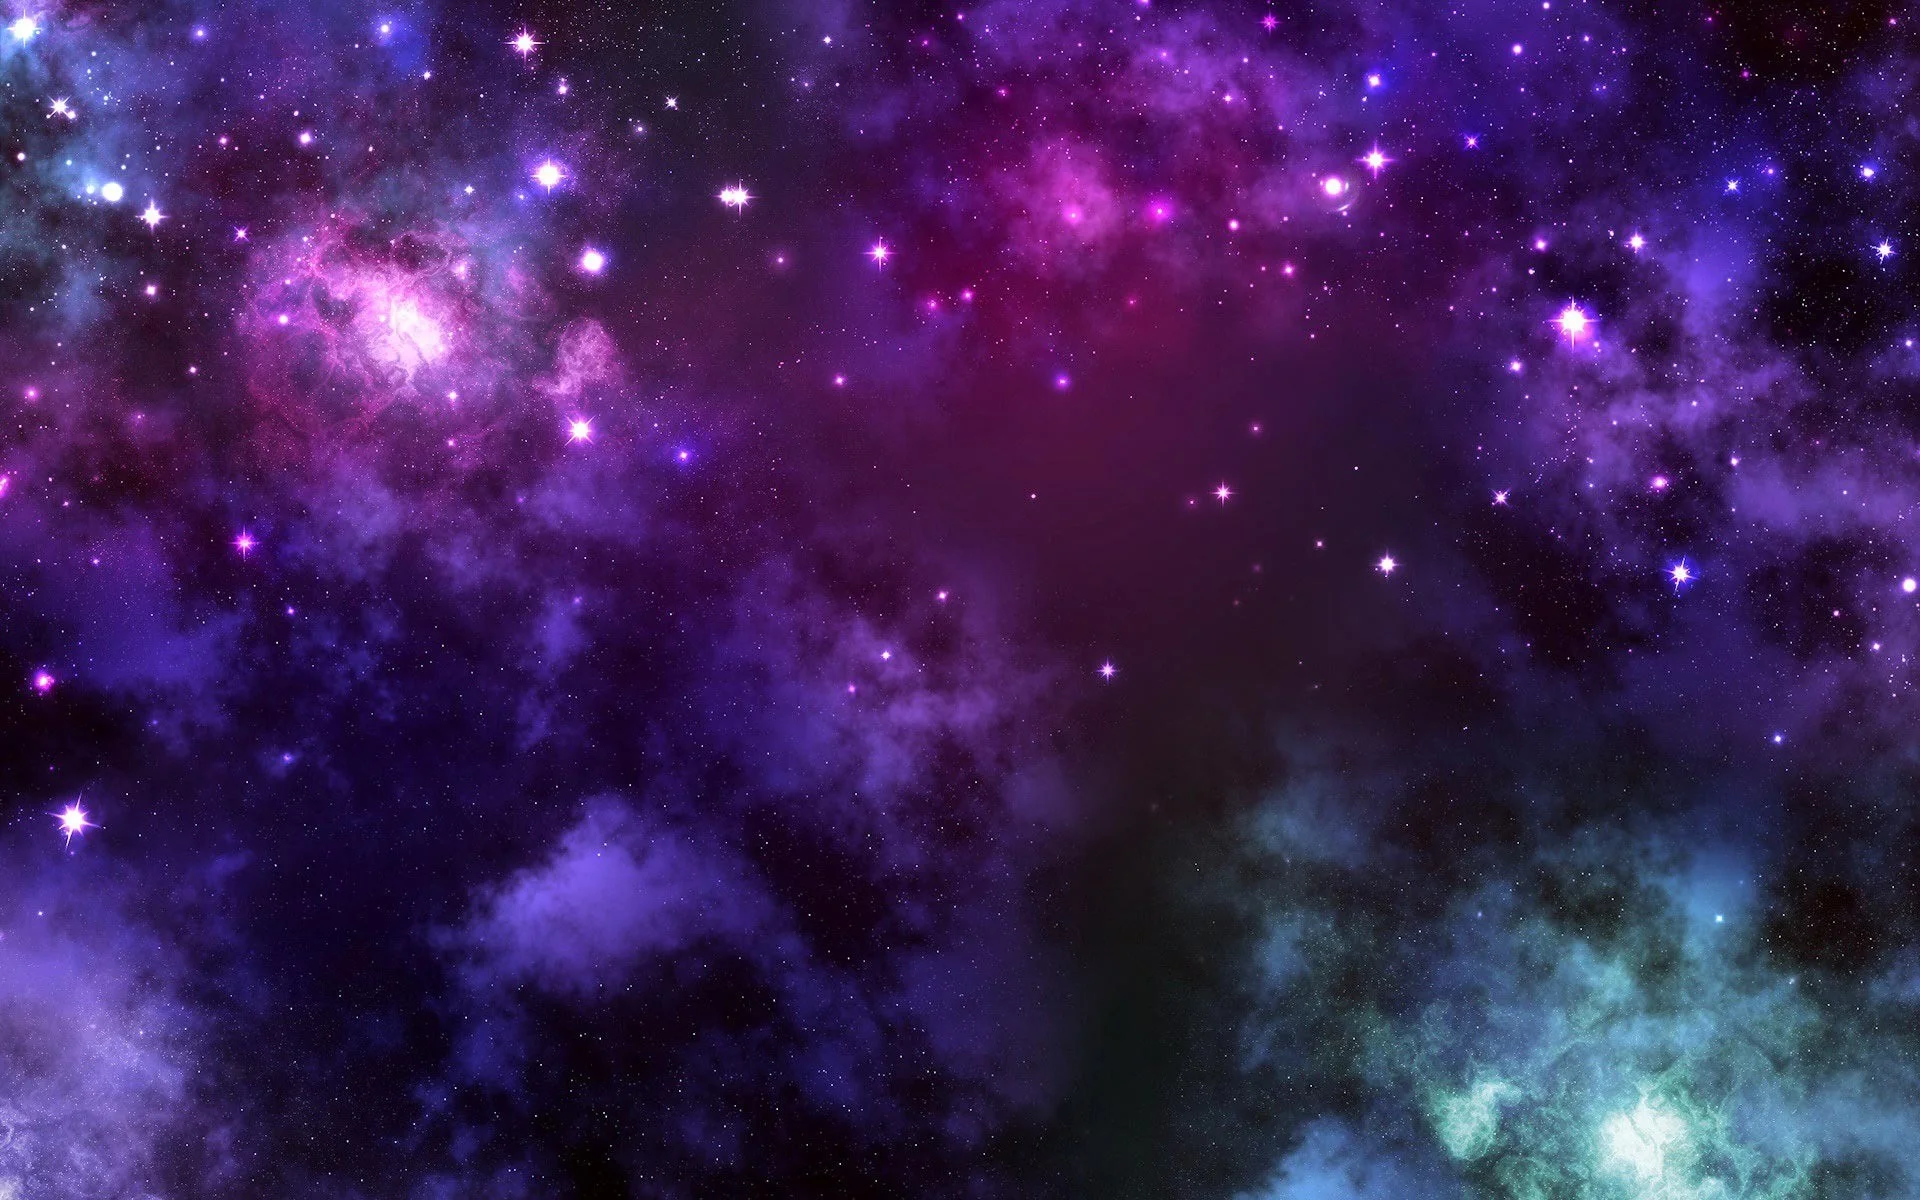 Bạn là tín đồ của những tấm hình nền đầy màu sắc và đẹp mê hồn? Những bức ảnh Purple Galaxy Wallpapers với sắc tím thần tiên, biểu trưng của sự thanh cao sẽ khiến cho bạn cảm thấy ngẩn ngơ và lạ kỳ hơn bao giờ hết.